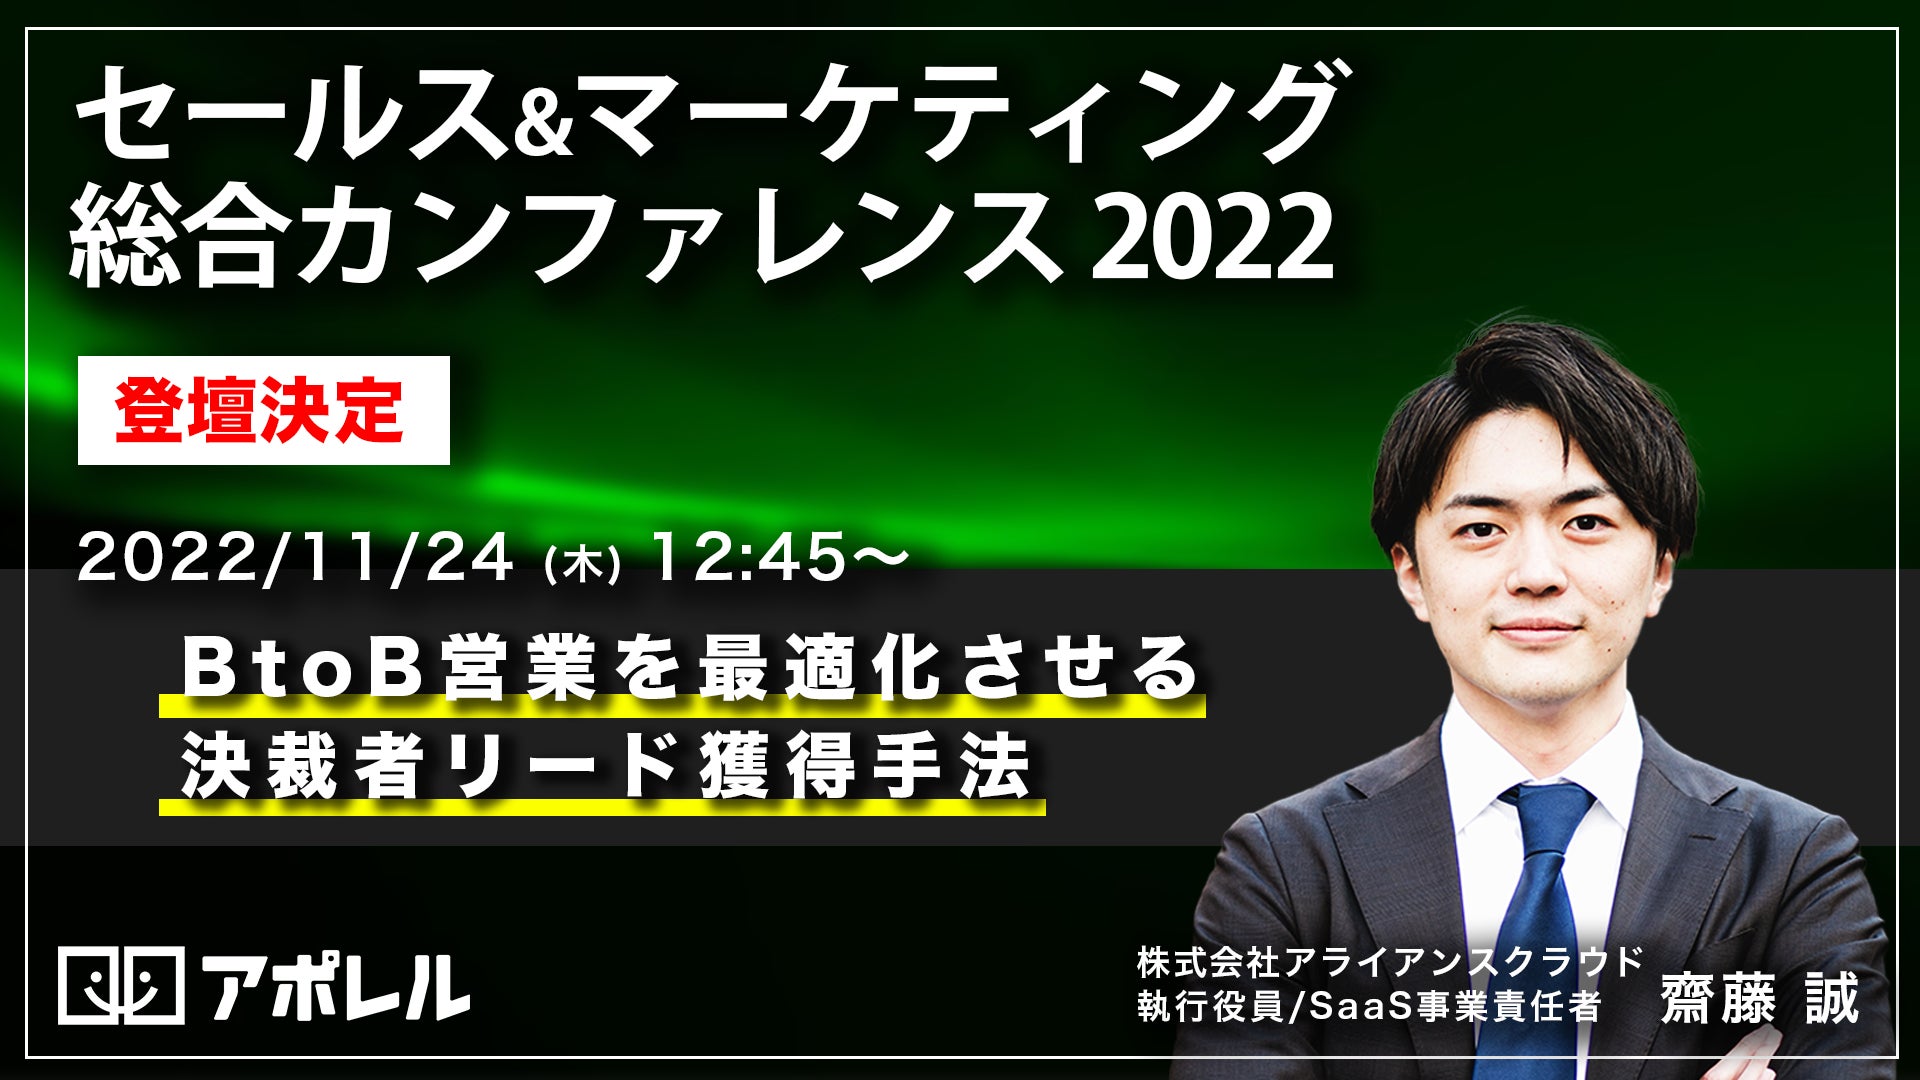 決裁者アポ獲得支援SaaS「アポレル」、日本最大級のセールスマーケイベント「セース&マーケティング総合カンファレンス2022」に登壇決定のサブ画像1